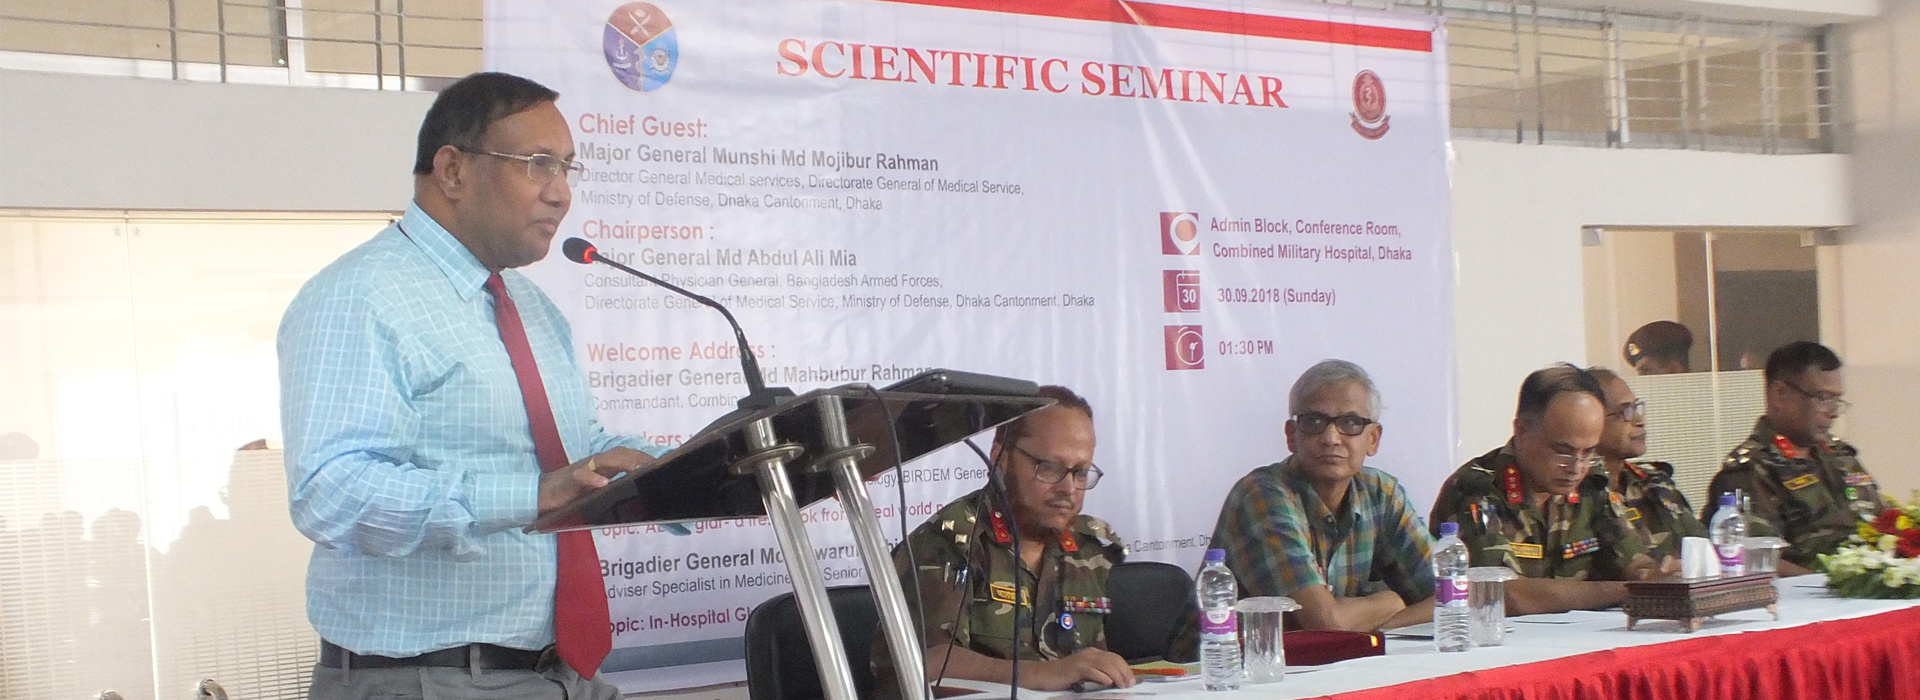 Scientific Seminar 2018